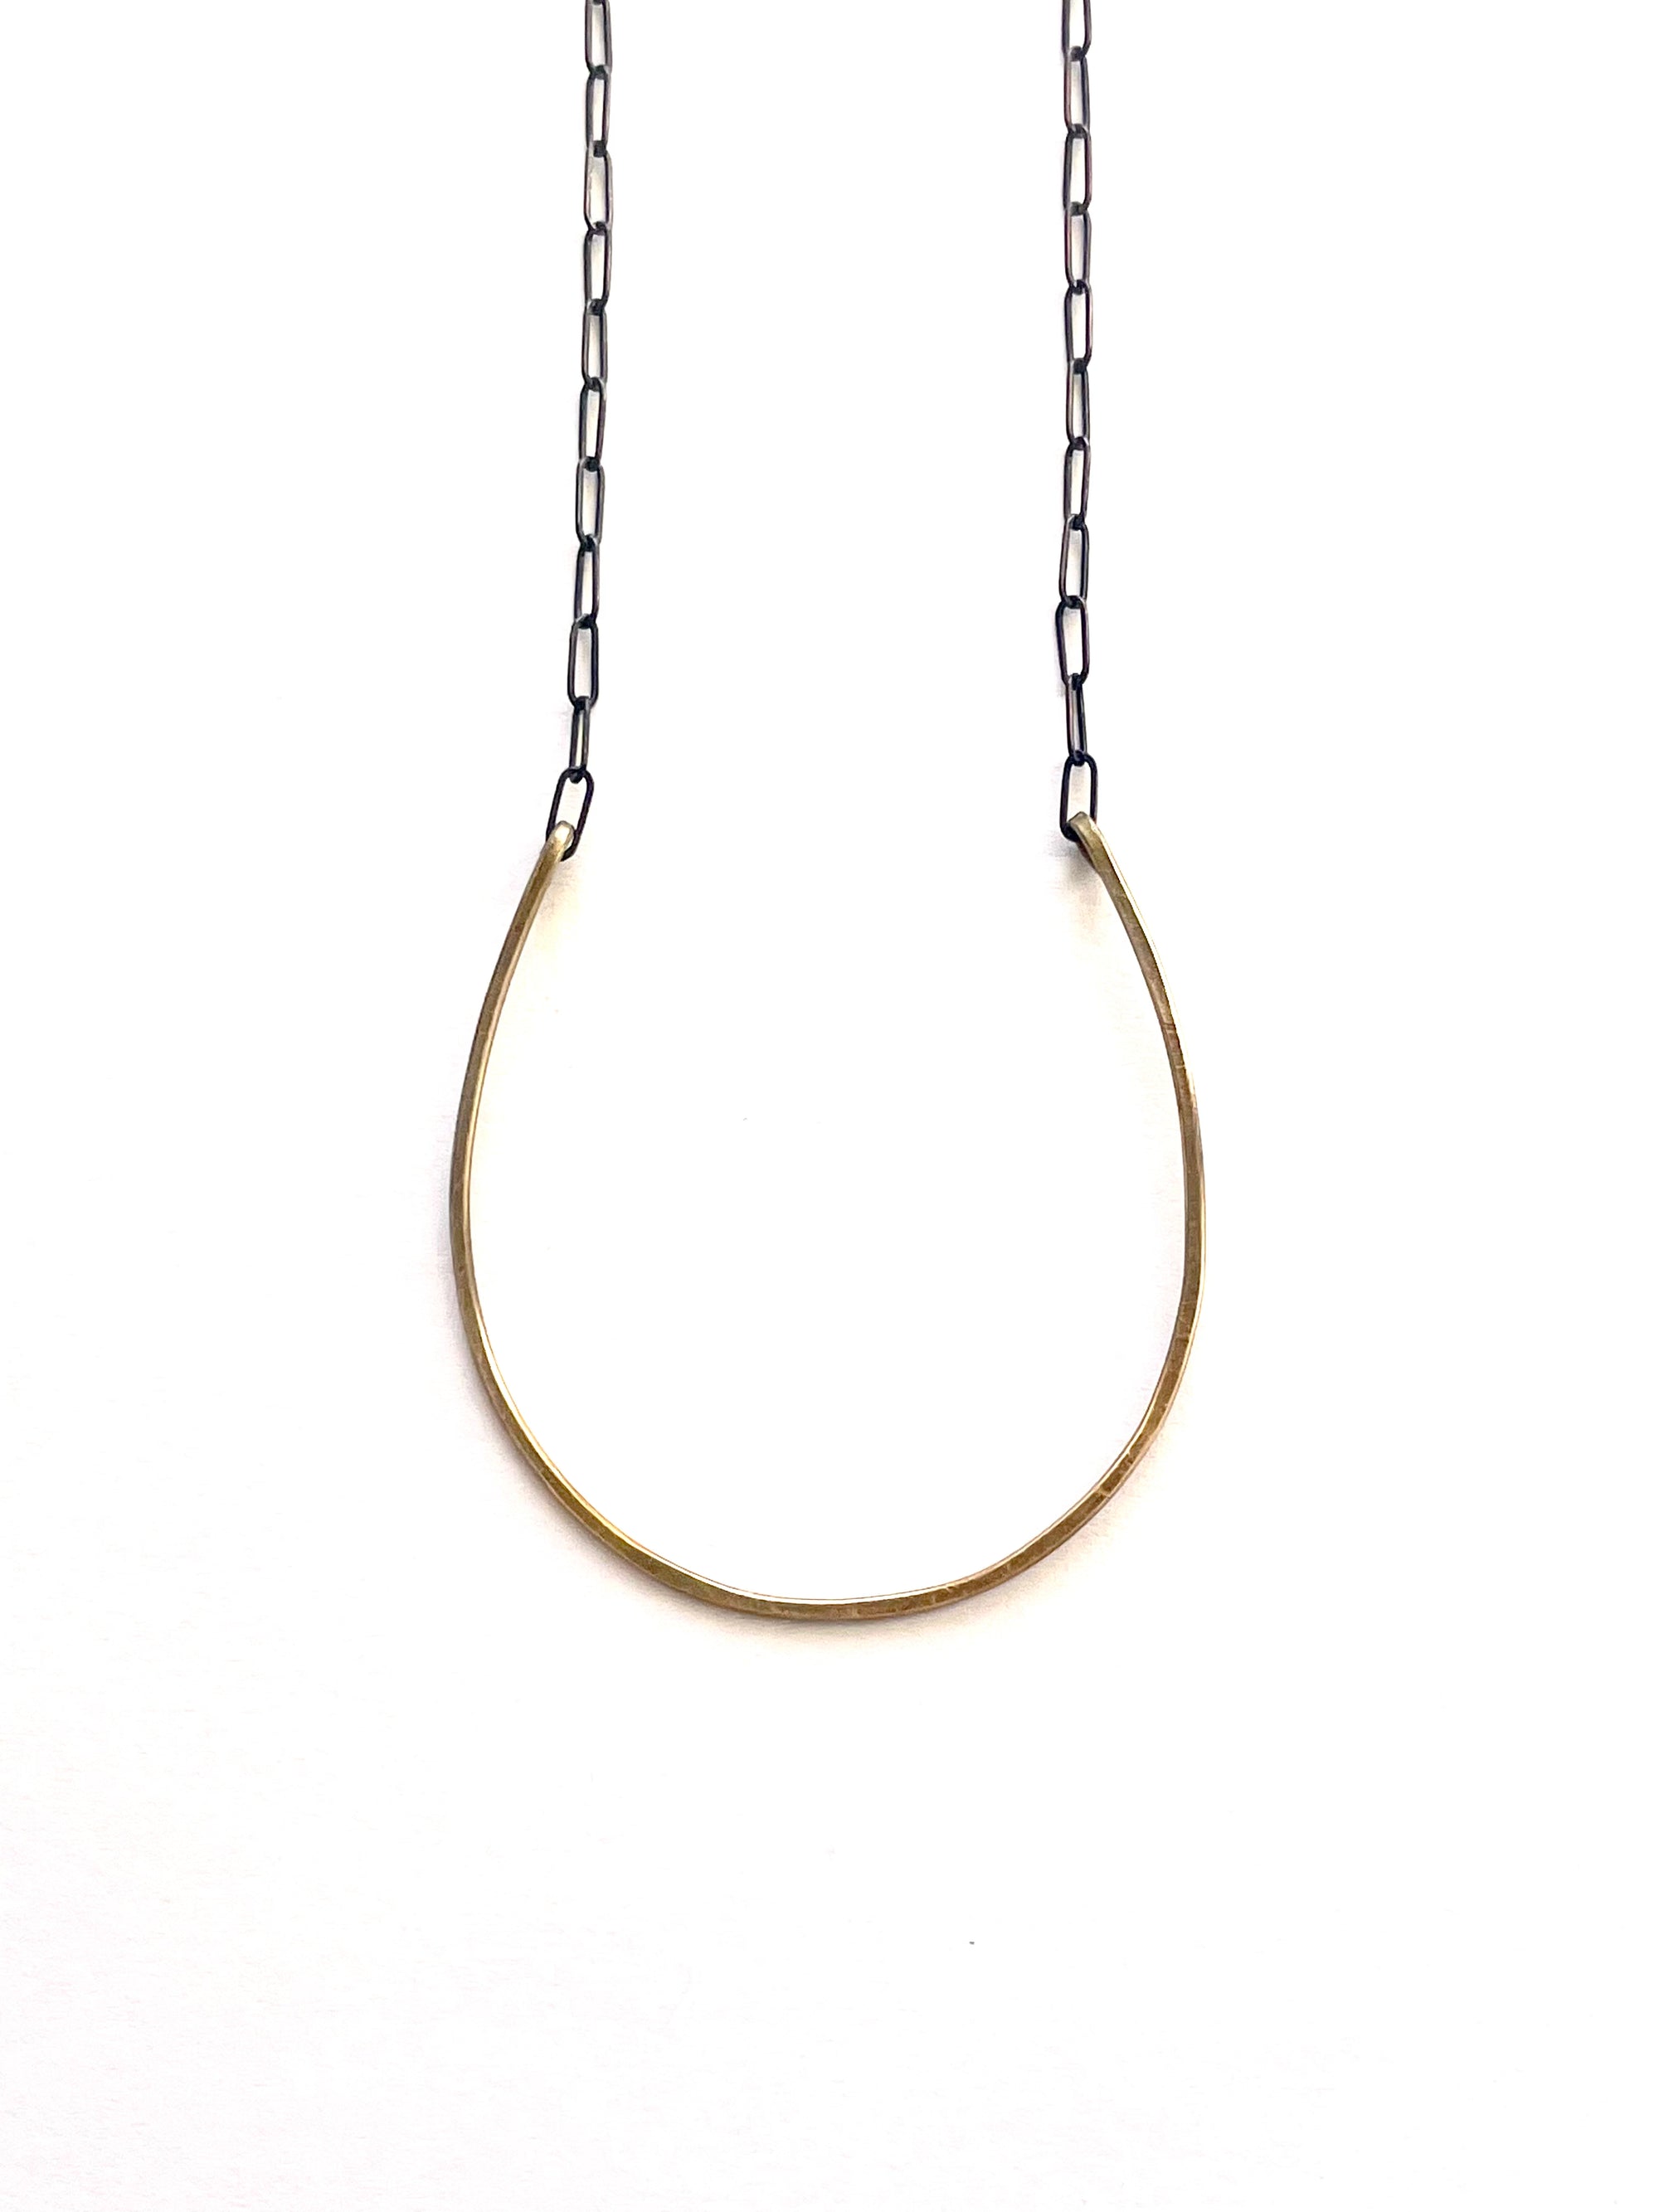 Horseshoe Necklace, Large